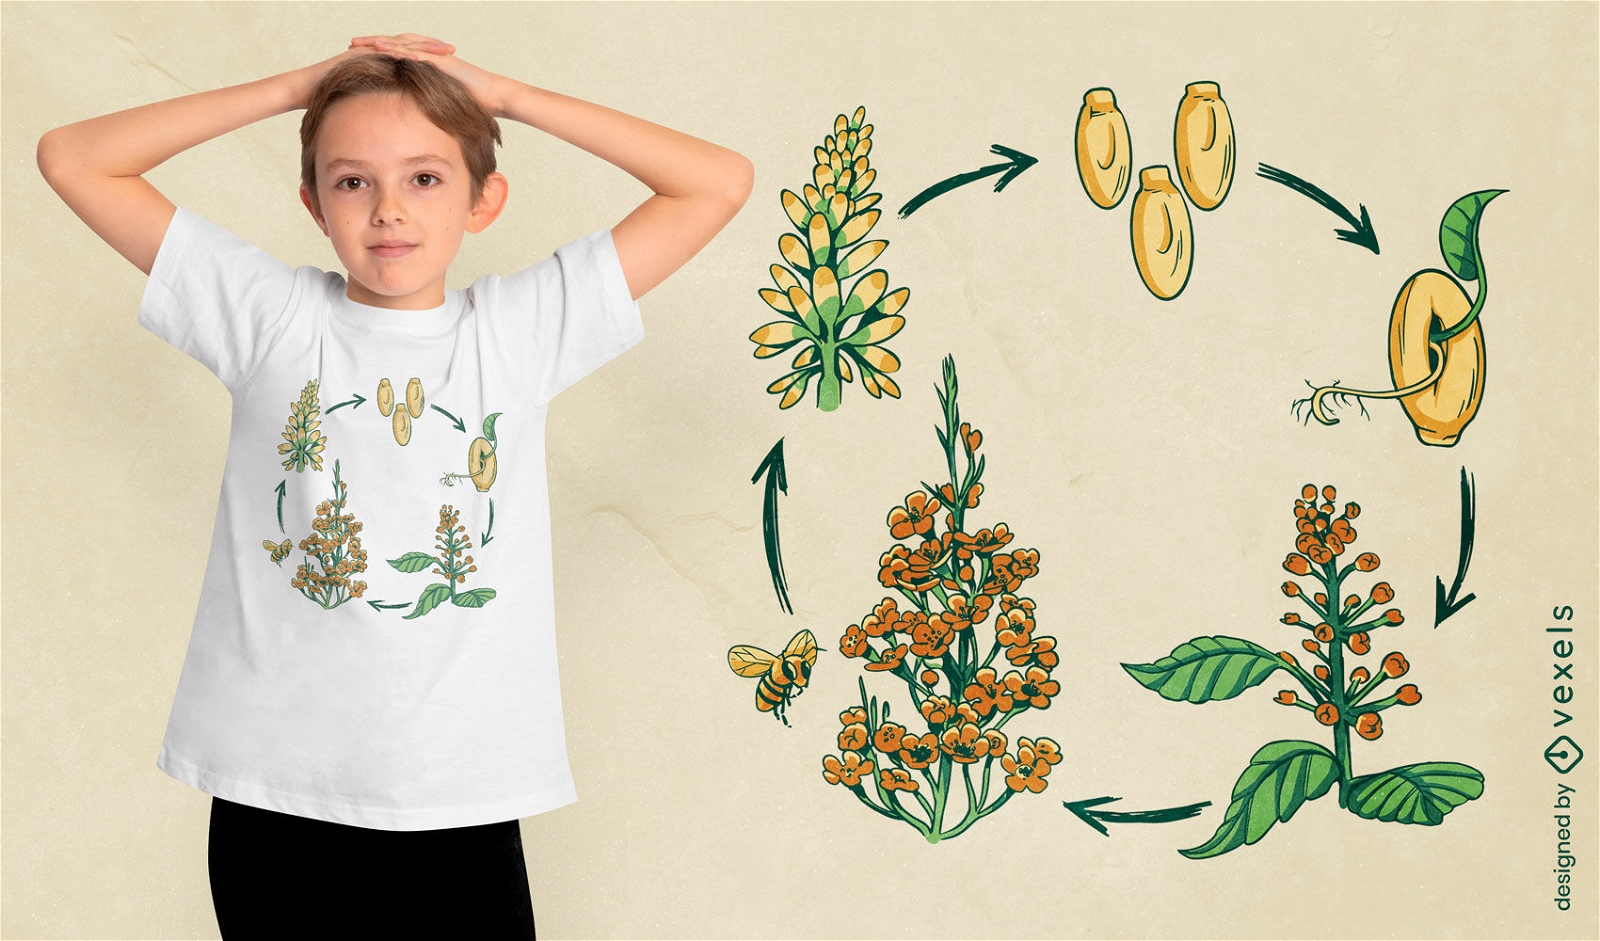 Dise?o de camiseta del ciclo de vida de la flor.